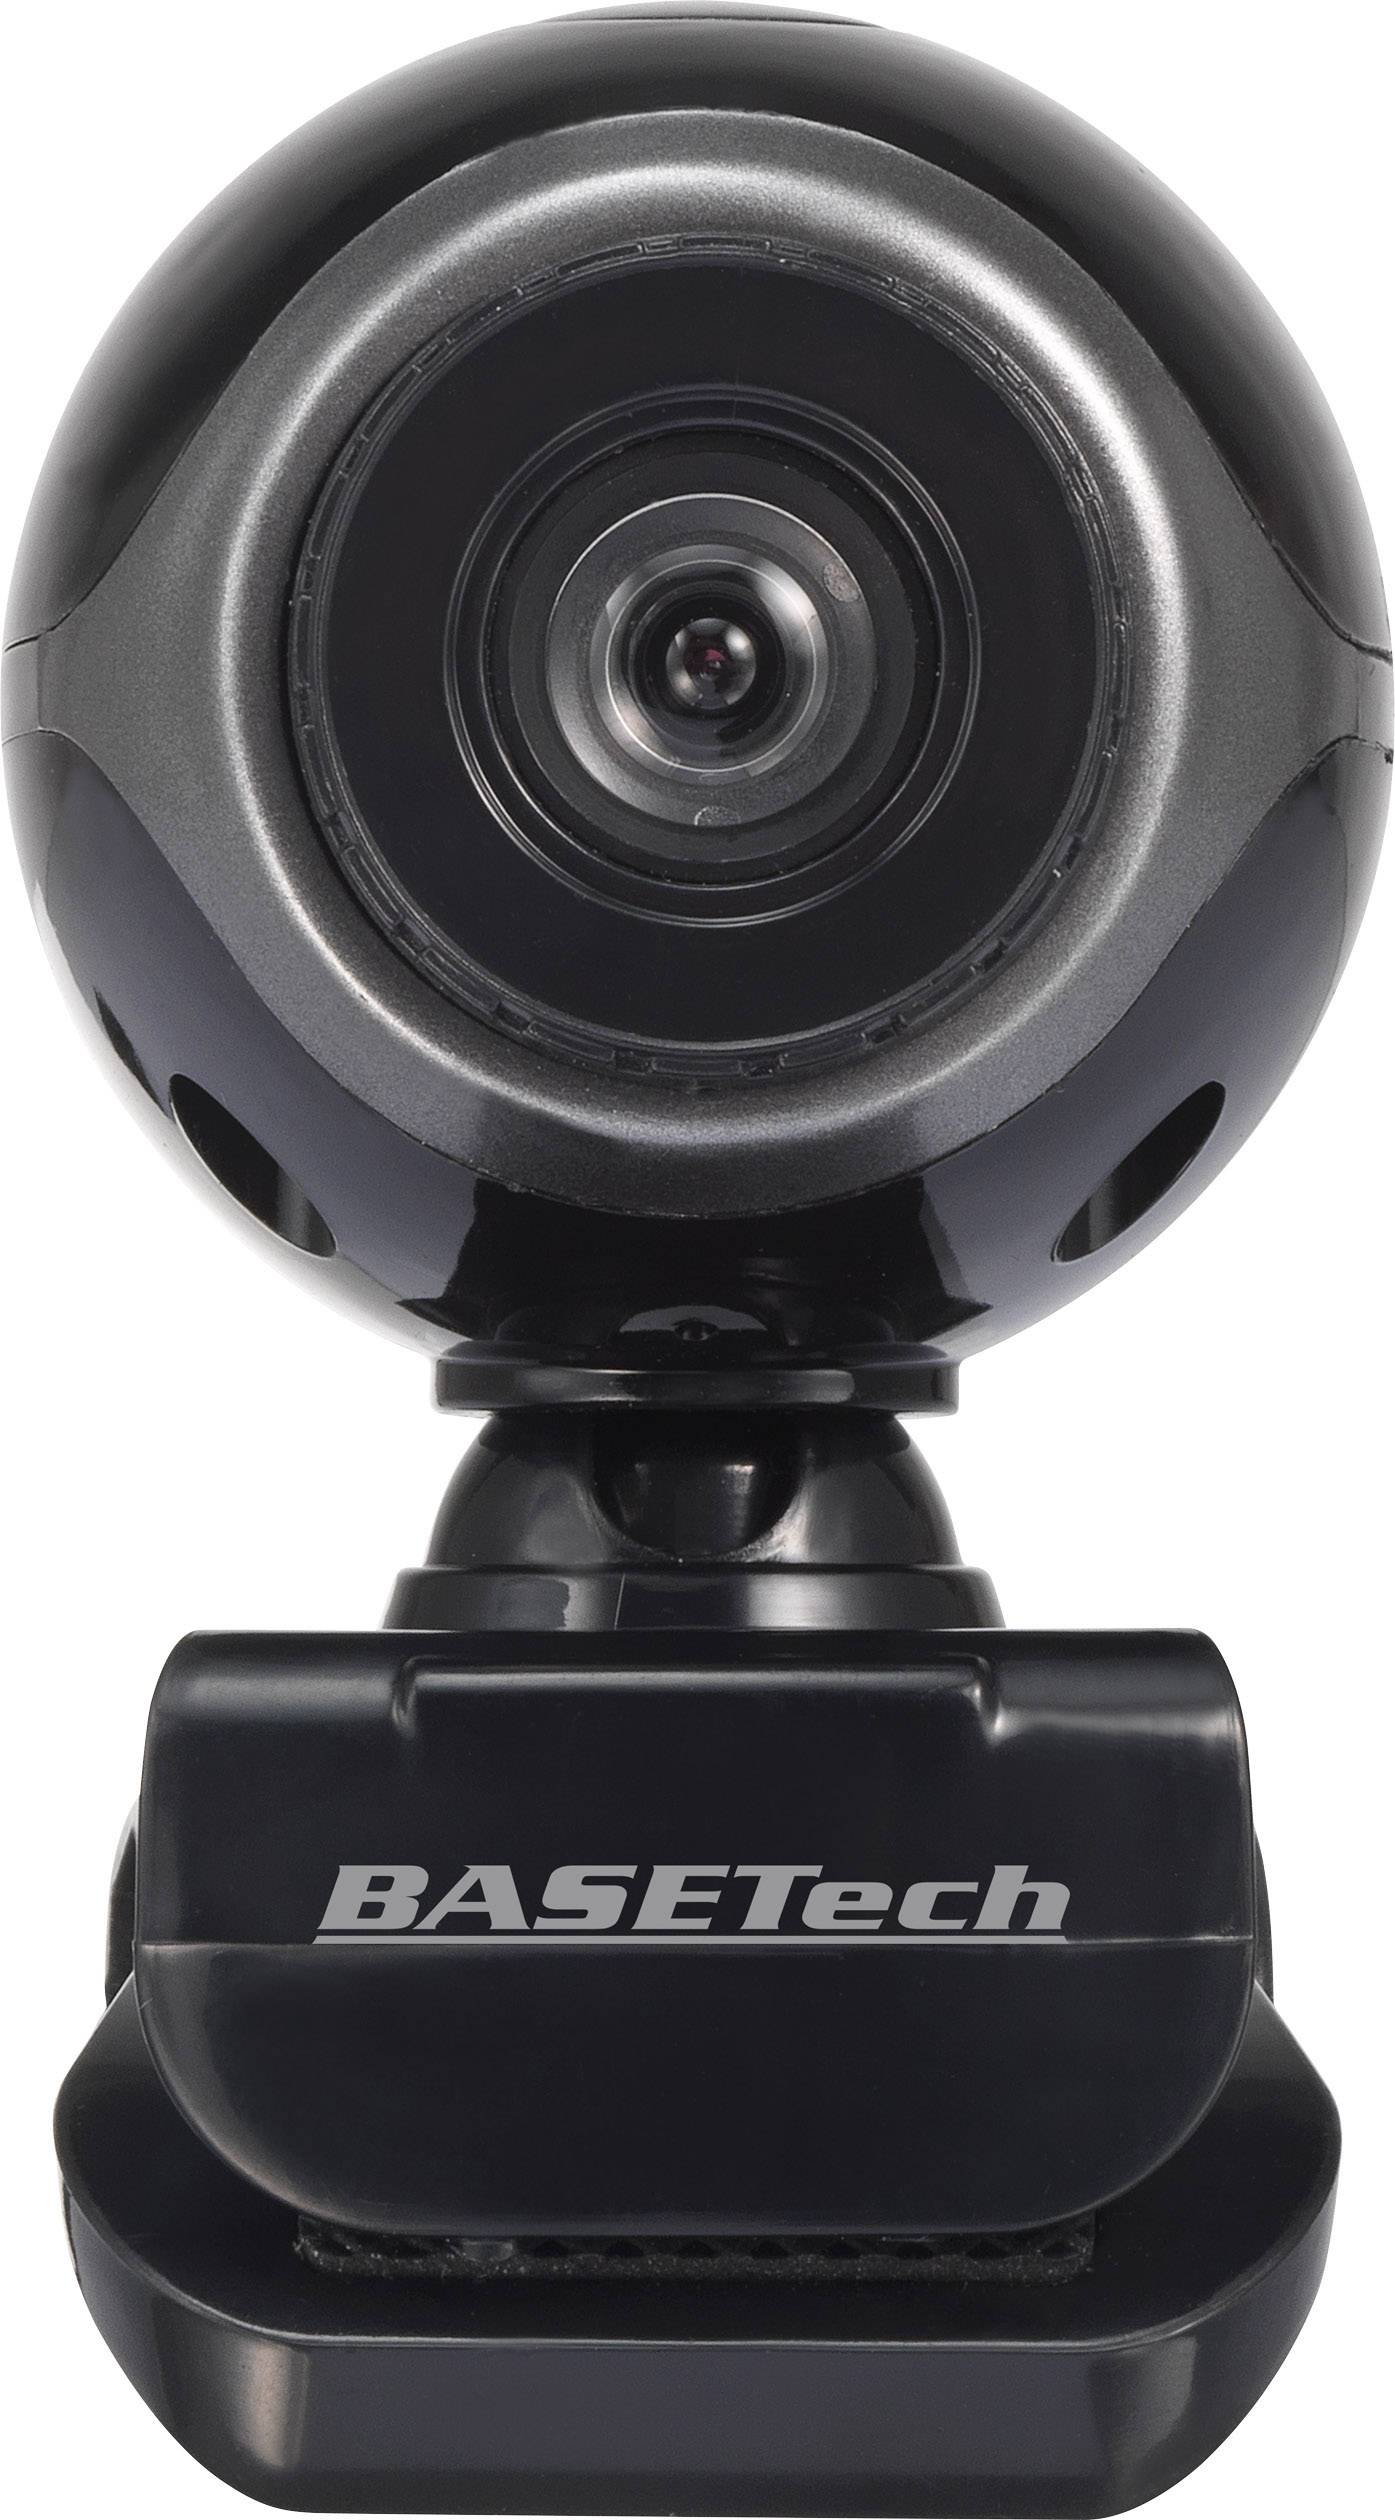 kamera-internetowa-basetech-bt-1616189-640-x-480-px-1-szt-zam-w-w